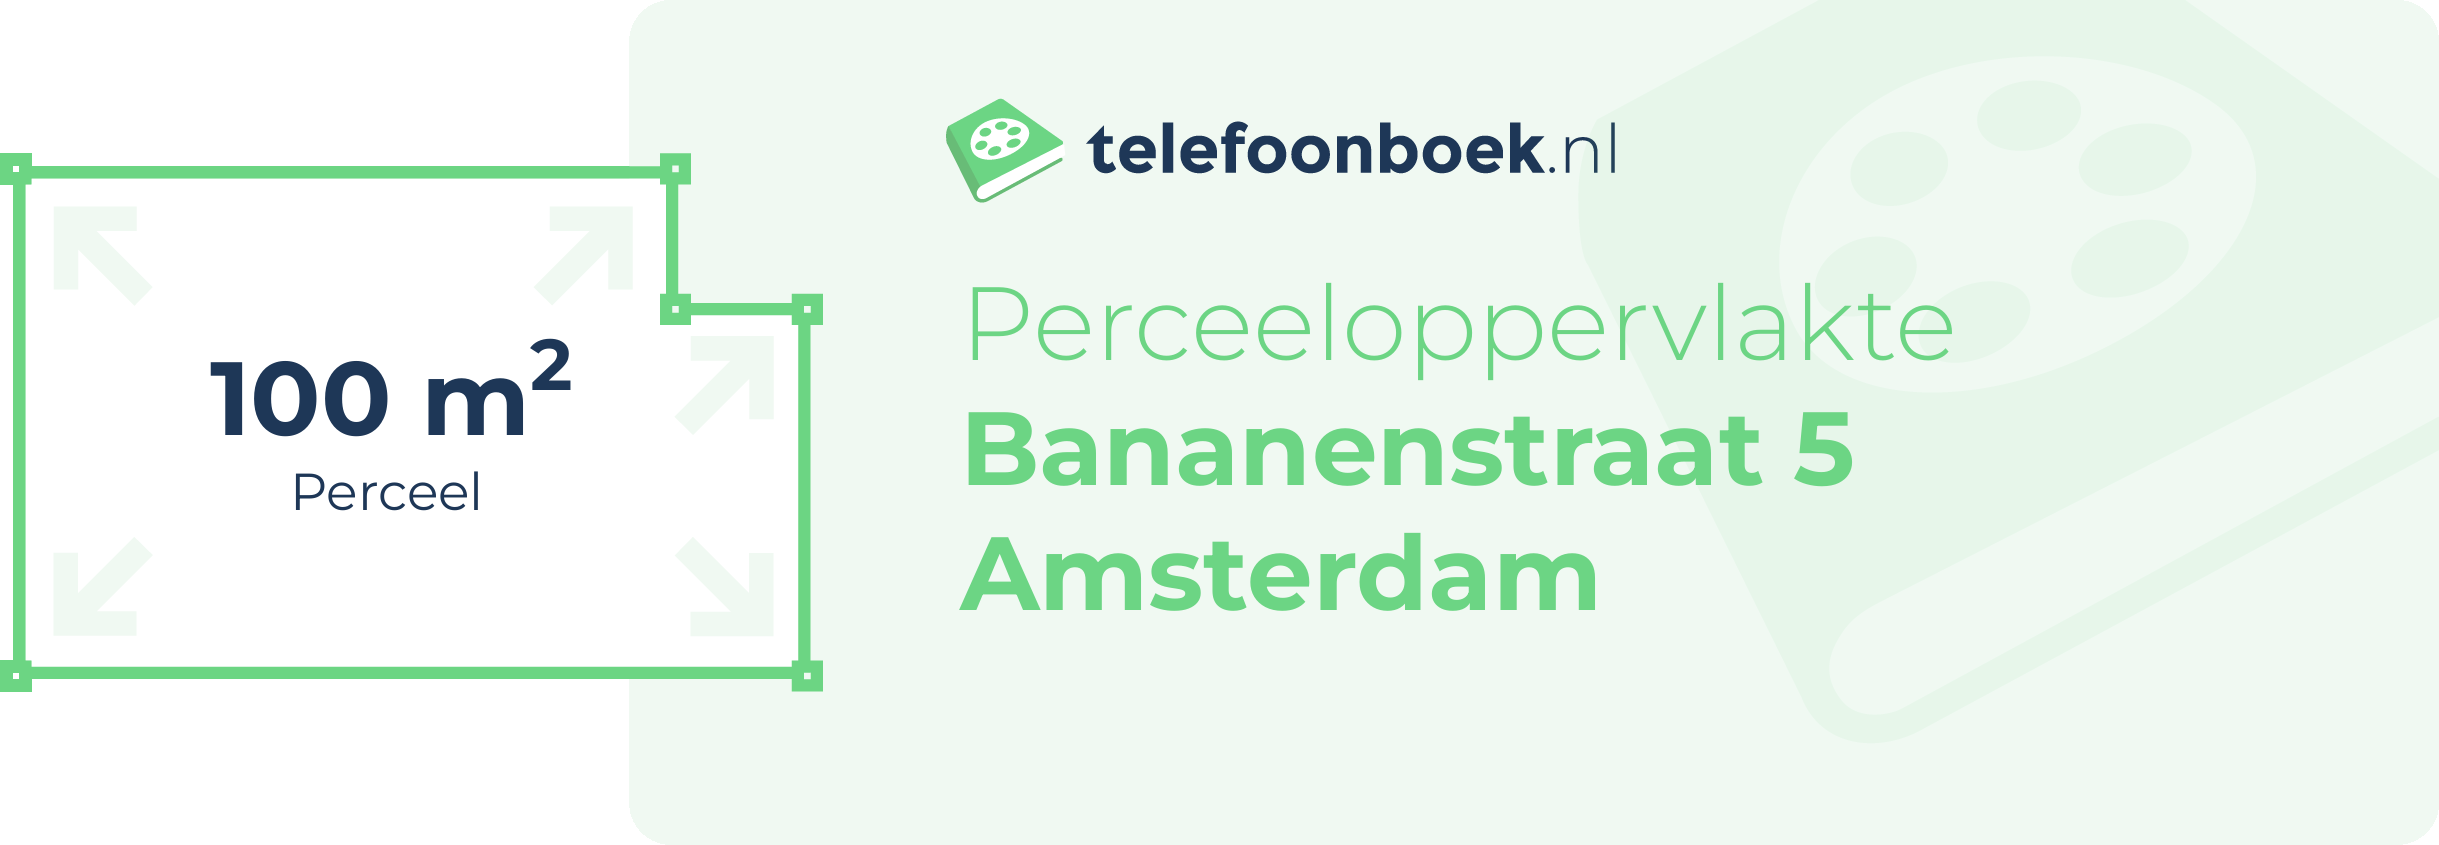 Perceeloppervlakte Bananenstraat 5 Amsterdam